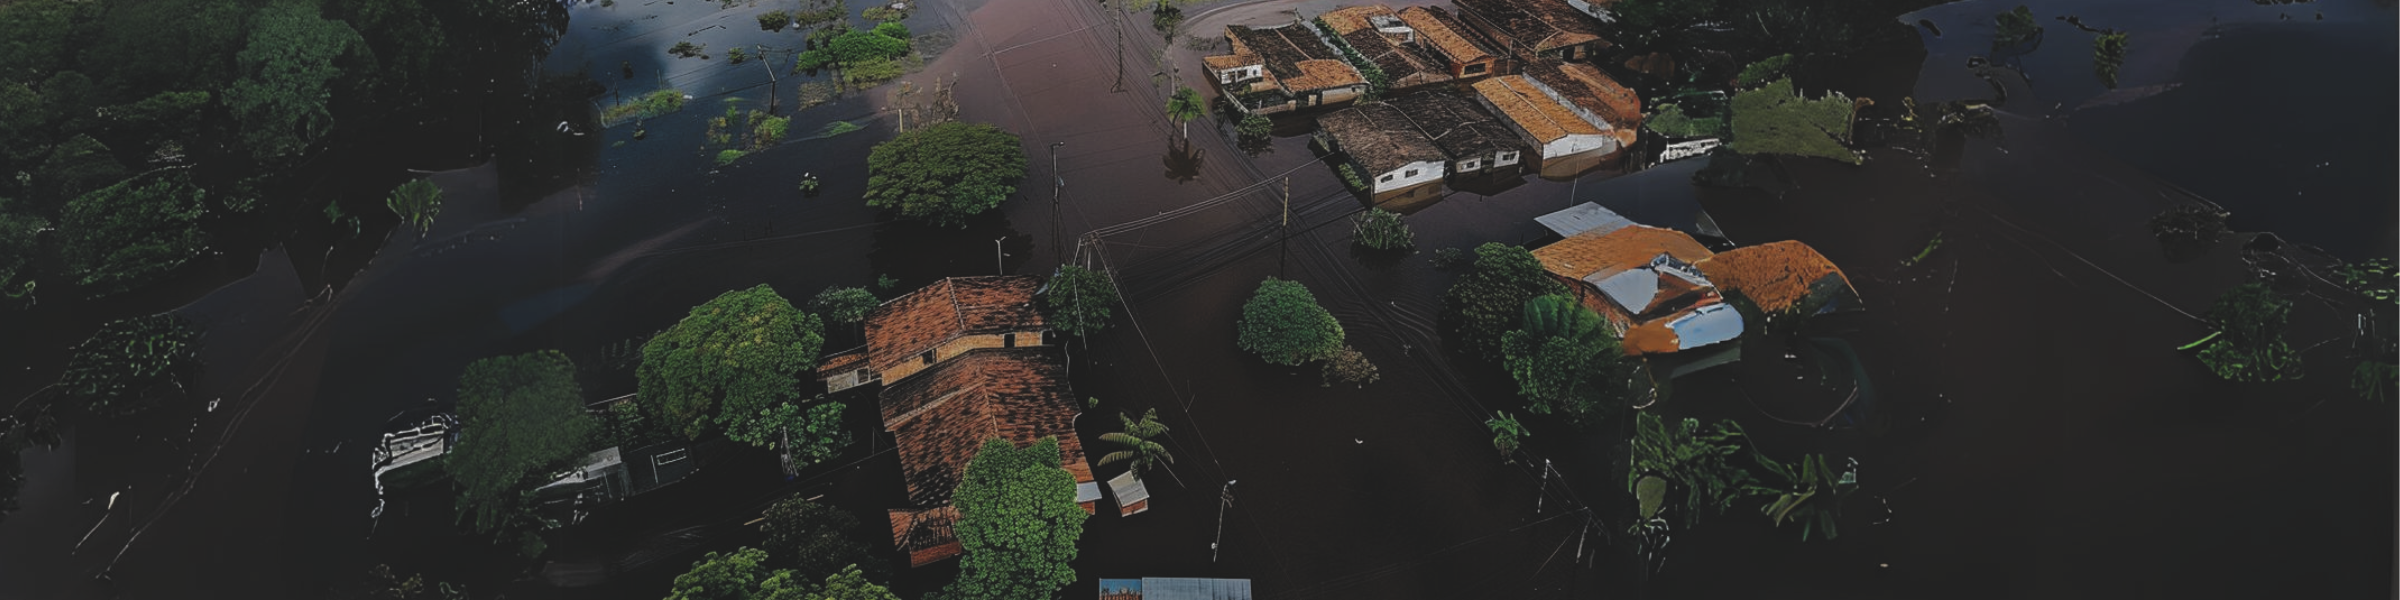 A imagem aérea mostra uma extensa área residencial inundada. As águas marrons submergiram ruas e cercaram casas com telhados de barro, evidenciando o impacto severo das inundações. Algumas árvores emergem das águas, que refletem parcialmente as casas e a vegetação.